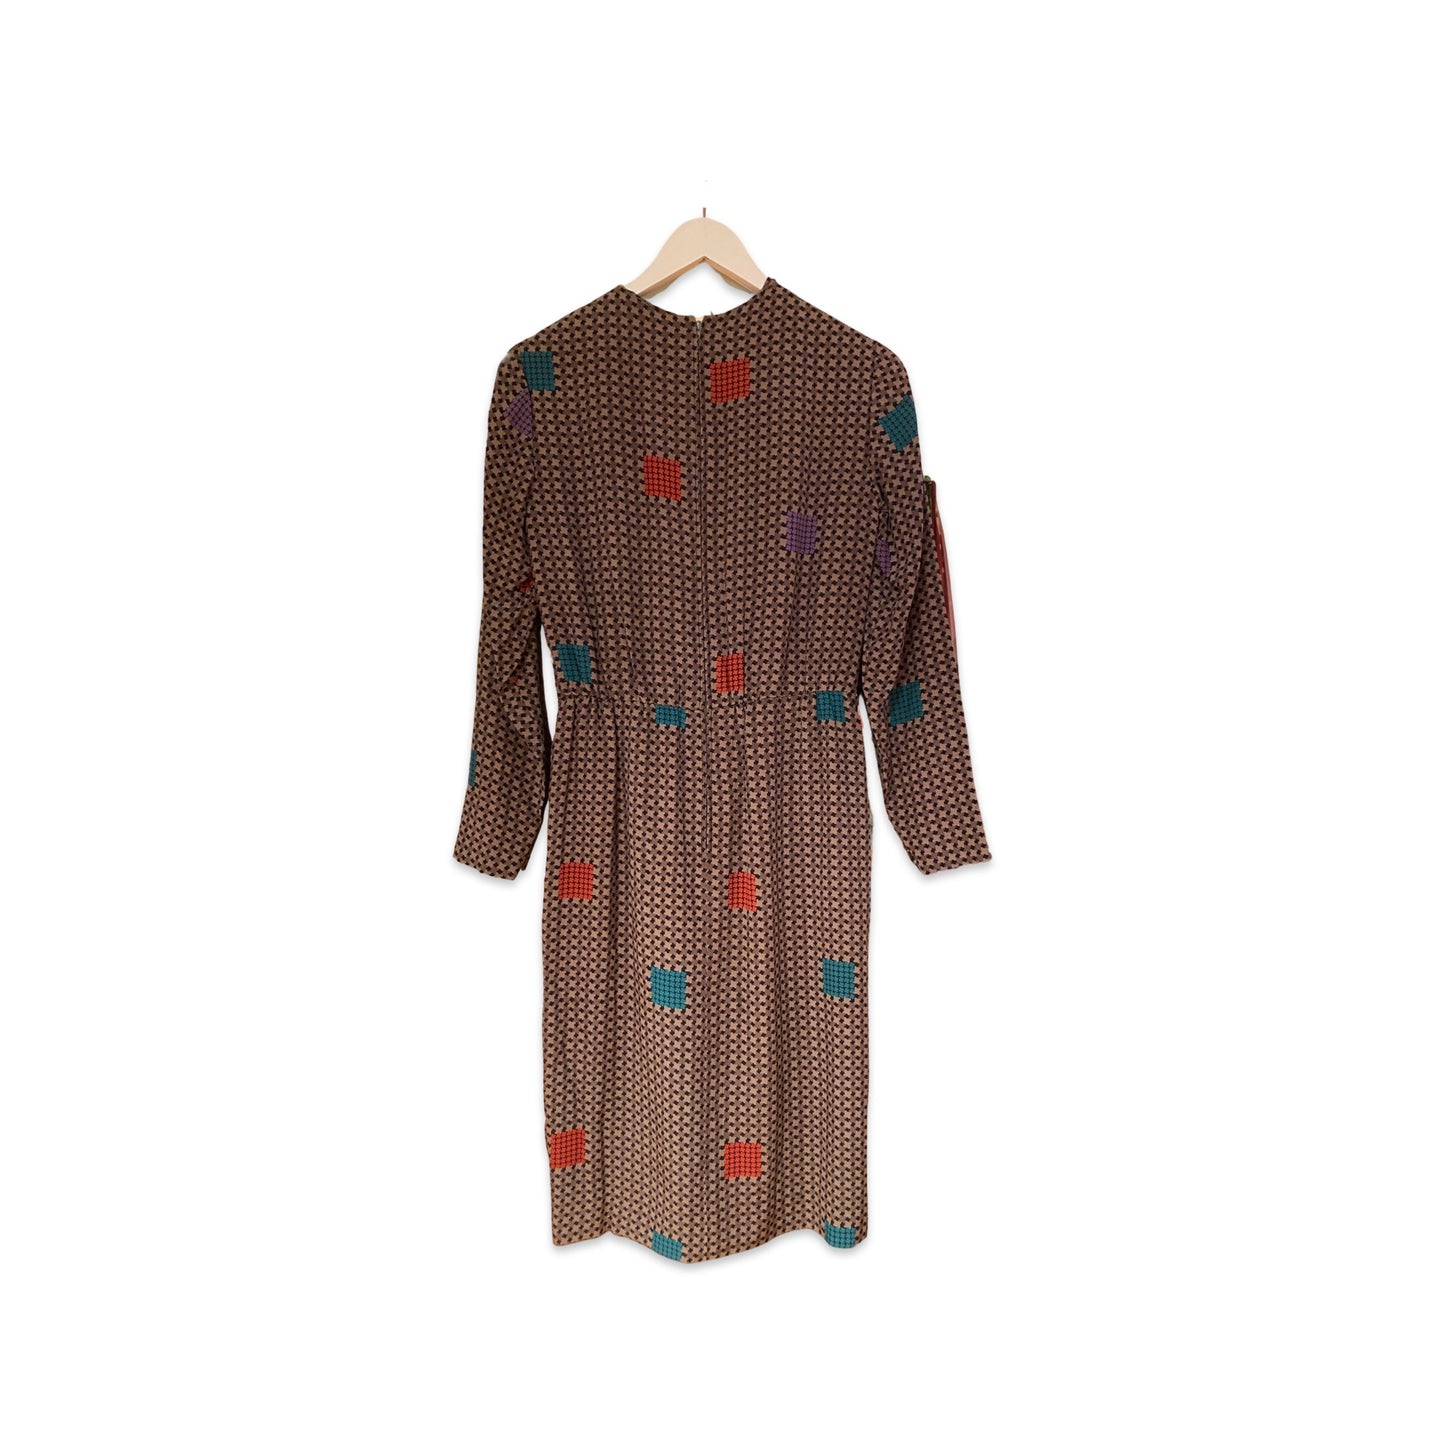 Zijden jurk – Studio Spitsbaard Vintage